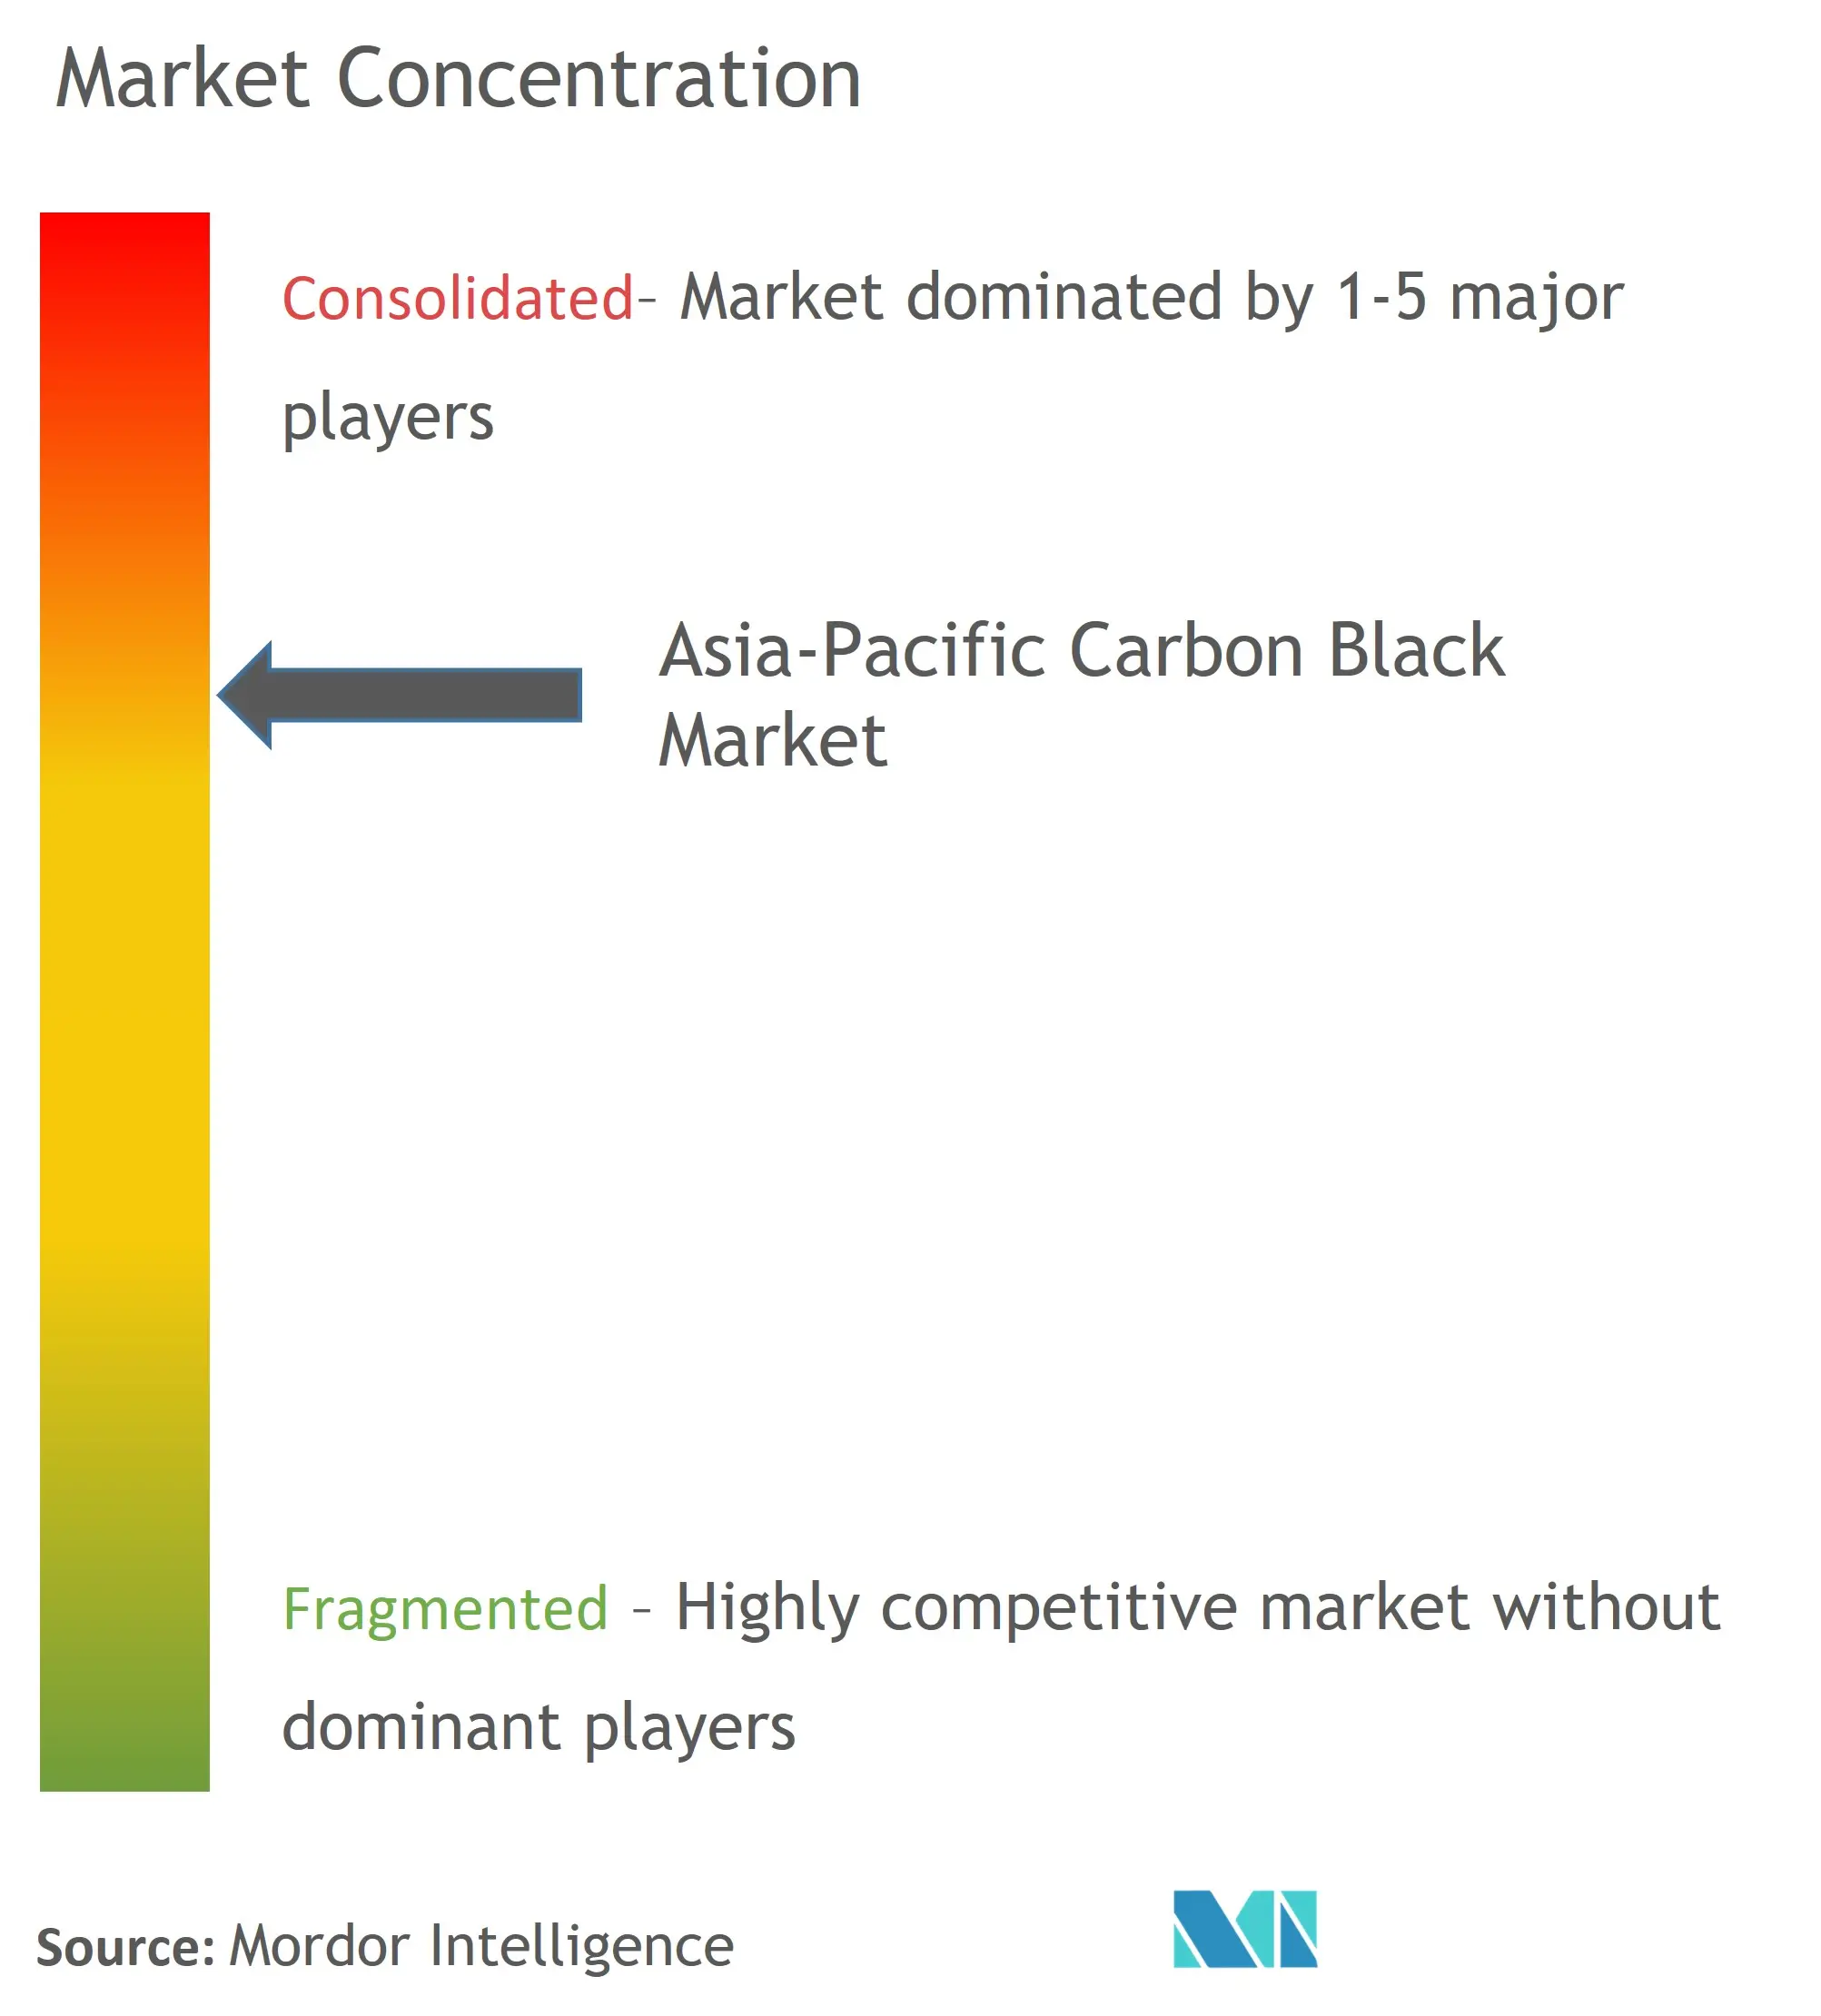 تركيز السوق السوداء للكربون في منطقة آسيا والمحيط الهادئ